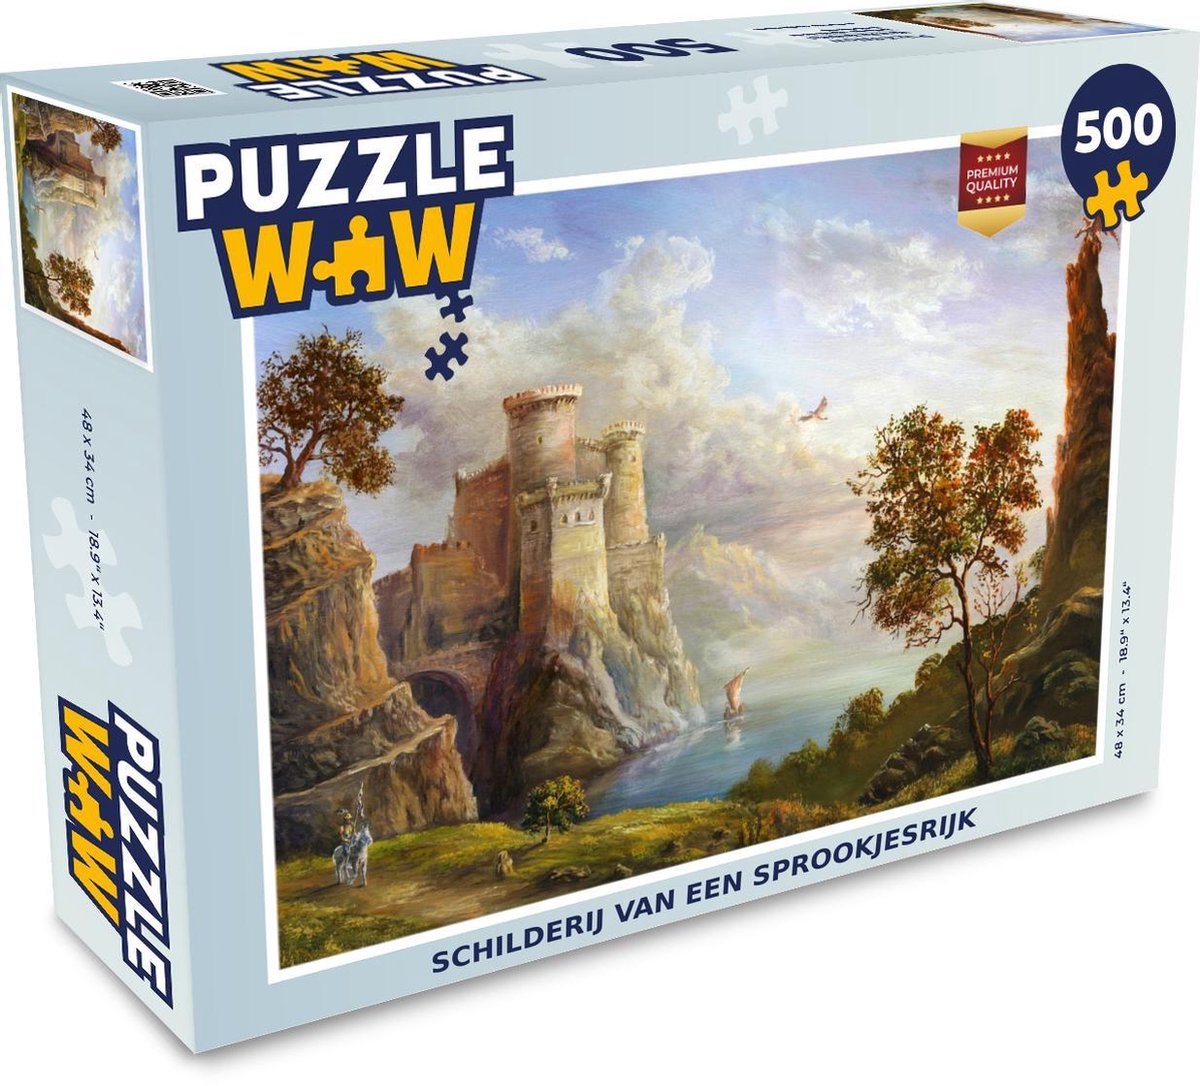 Afbeelding van product Puzzel 500 stukjes Kinderverhalen - Schilderij van een sprookjesrijk - PuzzleWow heeft +100000 puzzels